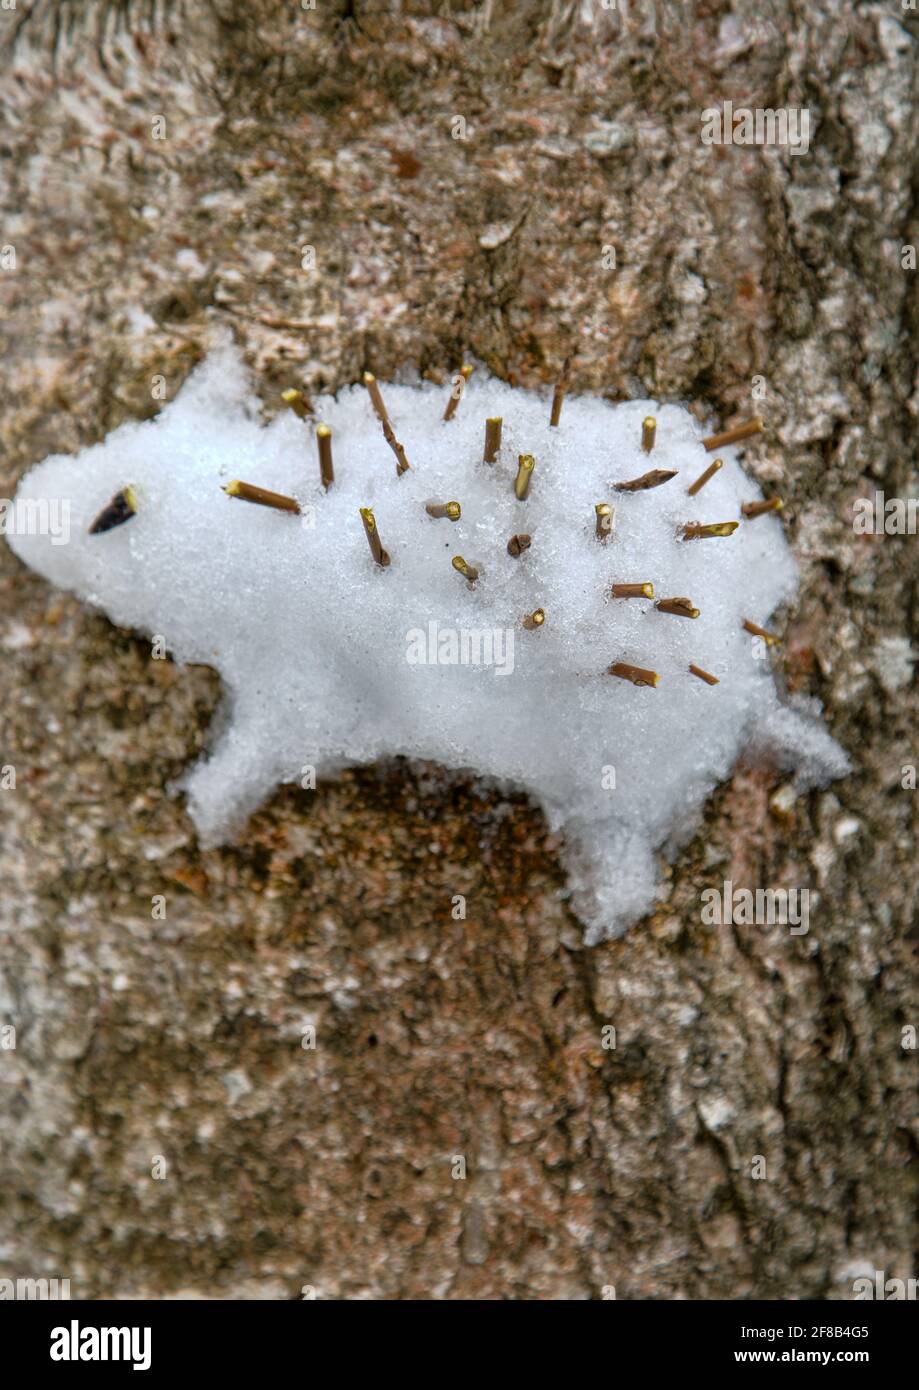 Approche créative des enfants. Les enfants ont coincé une figure de neige d'un hérisson sur un arbre (comme un relief élevé) Banque D'Images